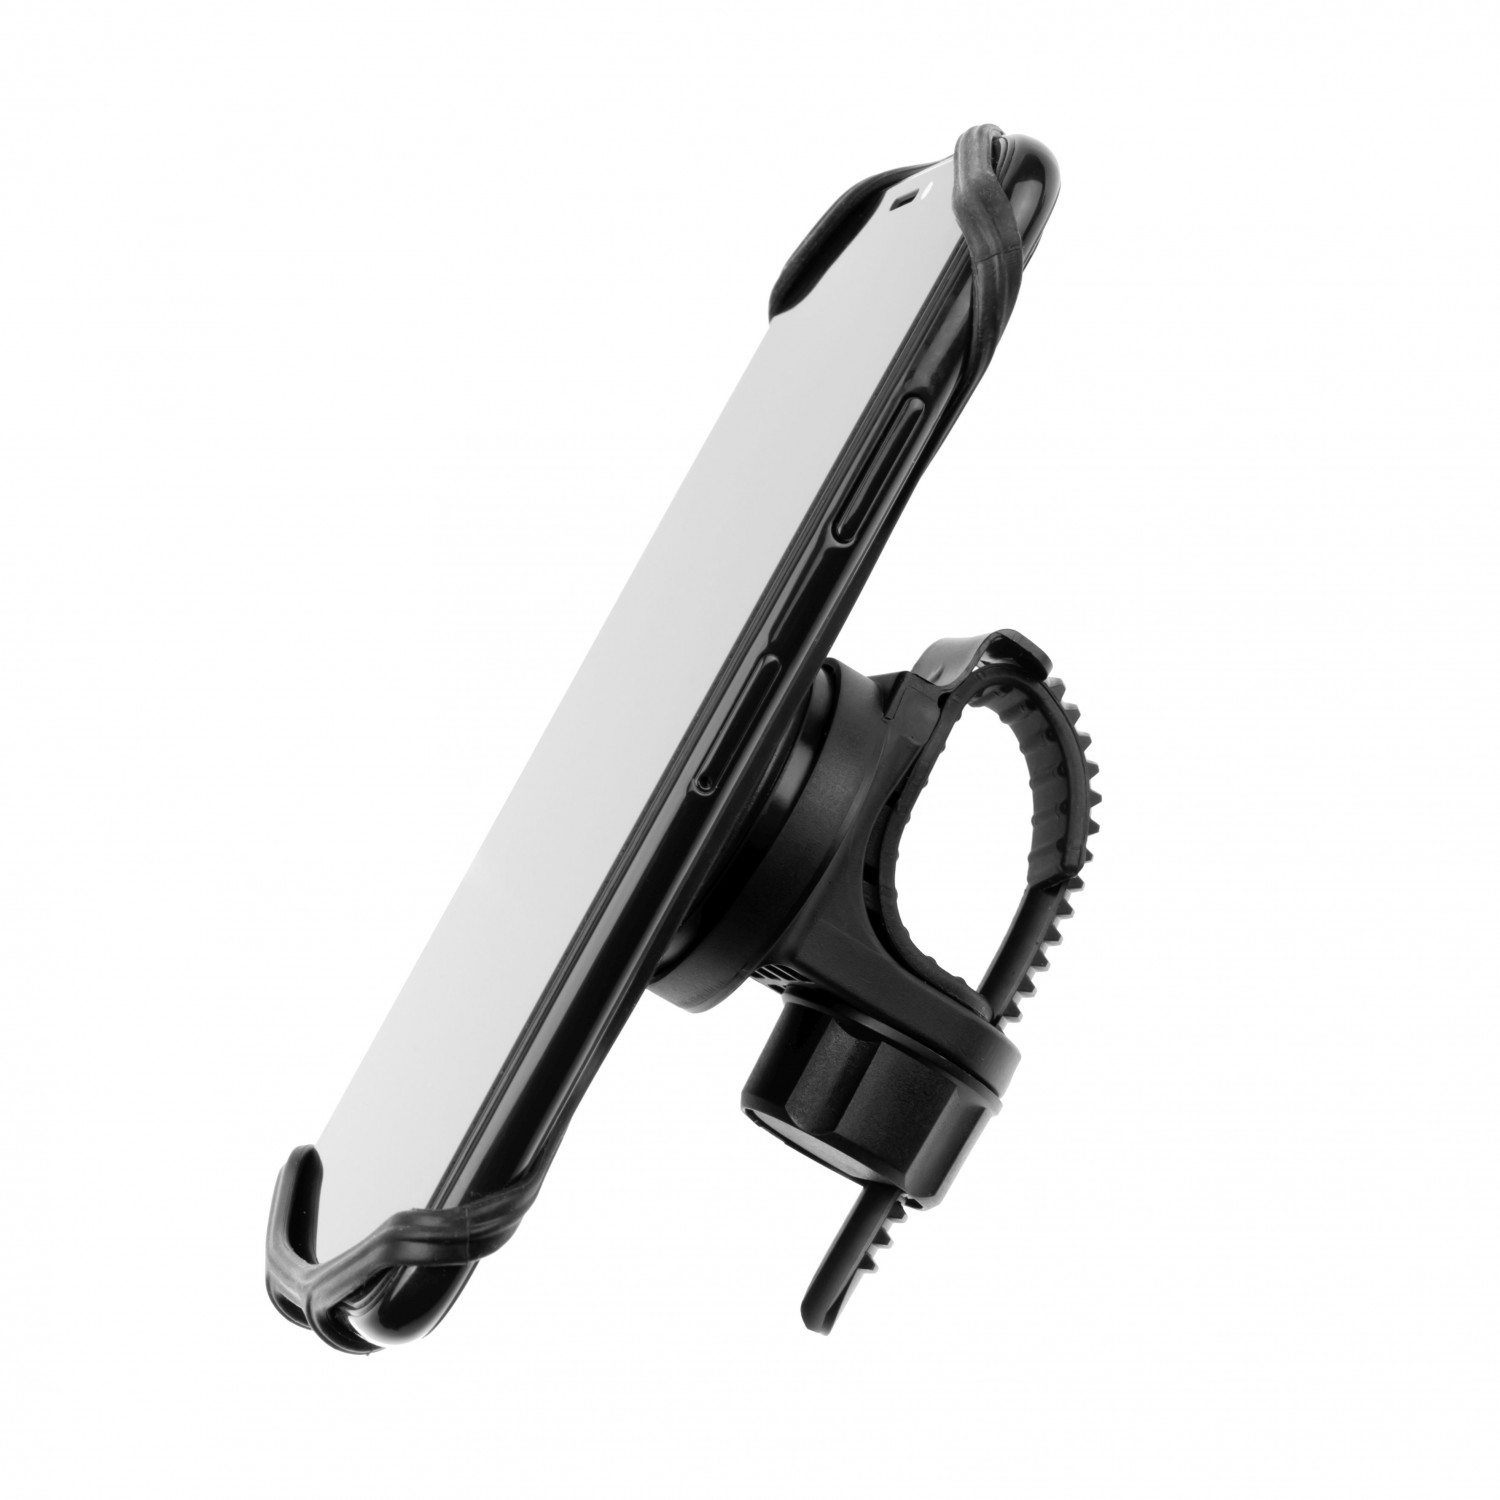 Odnímatelný silikonový držák mobilního telefonu na kolo FIXED Bikee 2, černý